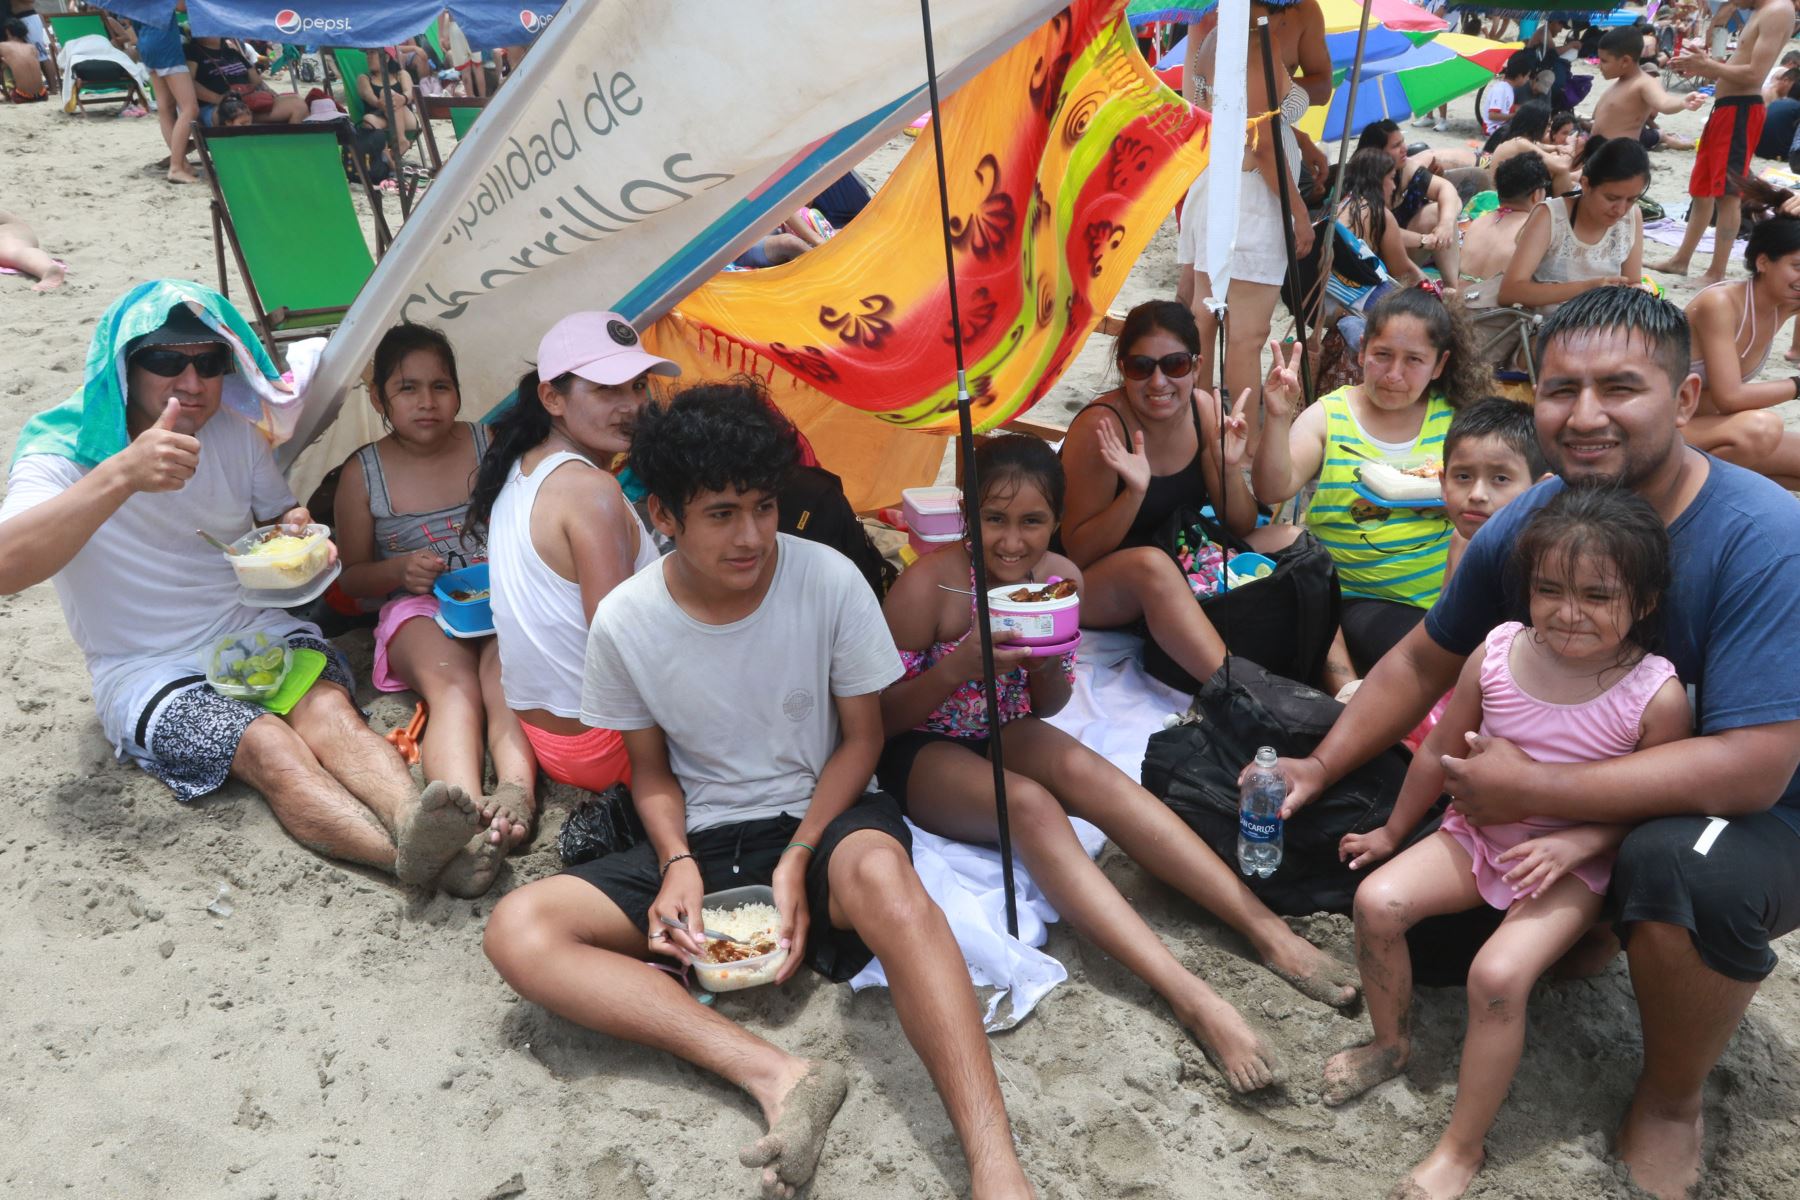 Veraneantes disfrutan de un domingo de playa en la Costa Verde, en el distrito de Chorrillos.
Foto: ANDINA/Héctor Vinces